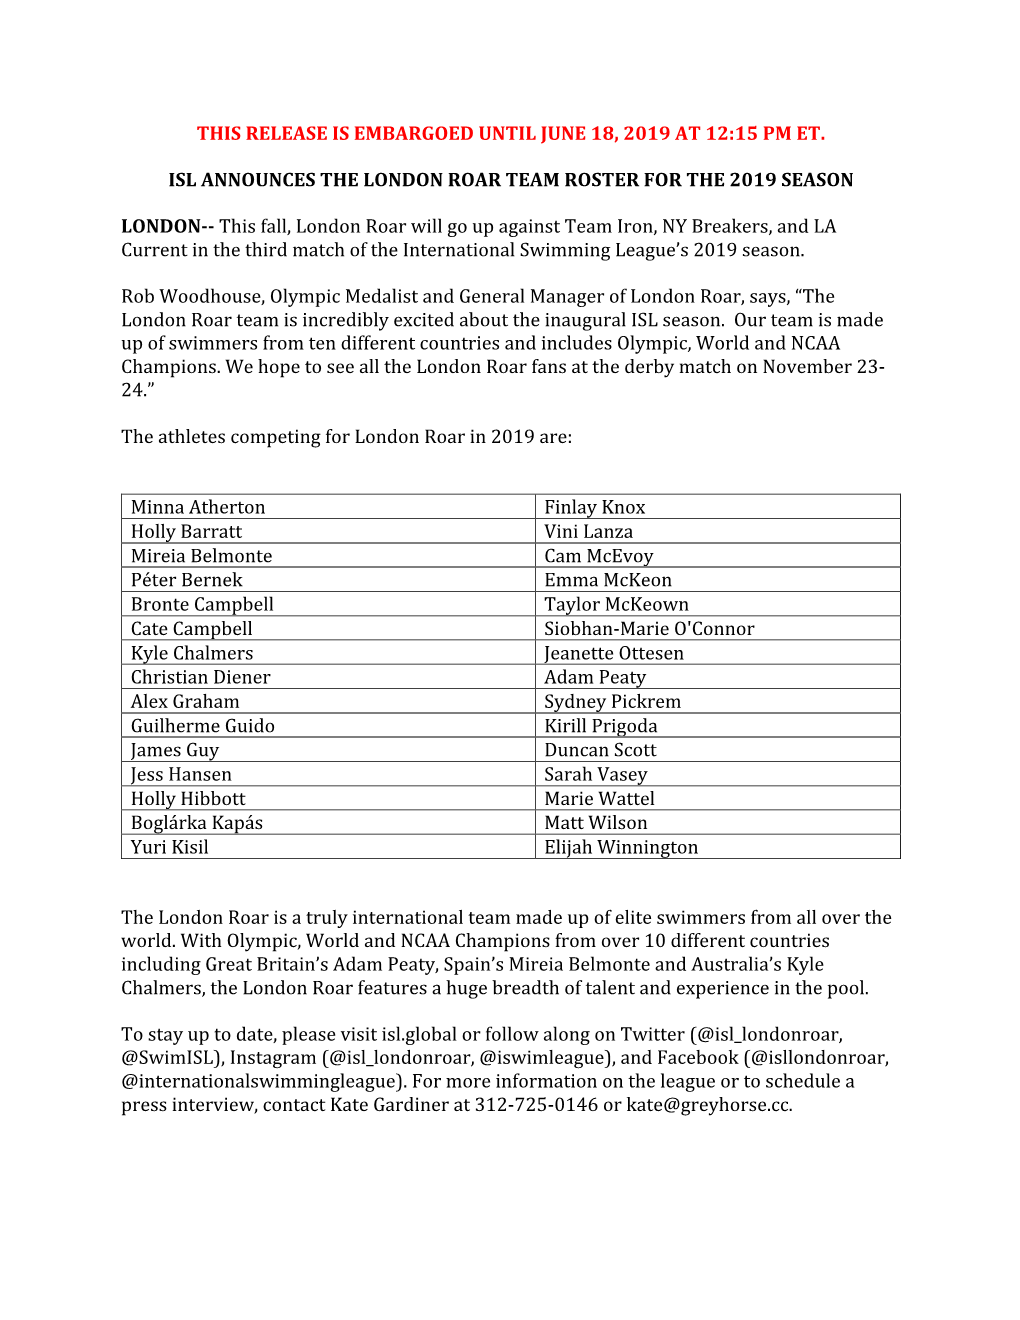 London Roar Team Roster for the 2019 Season